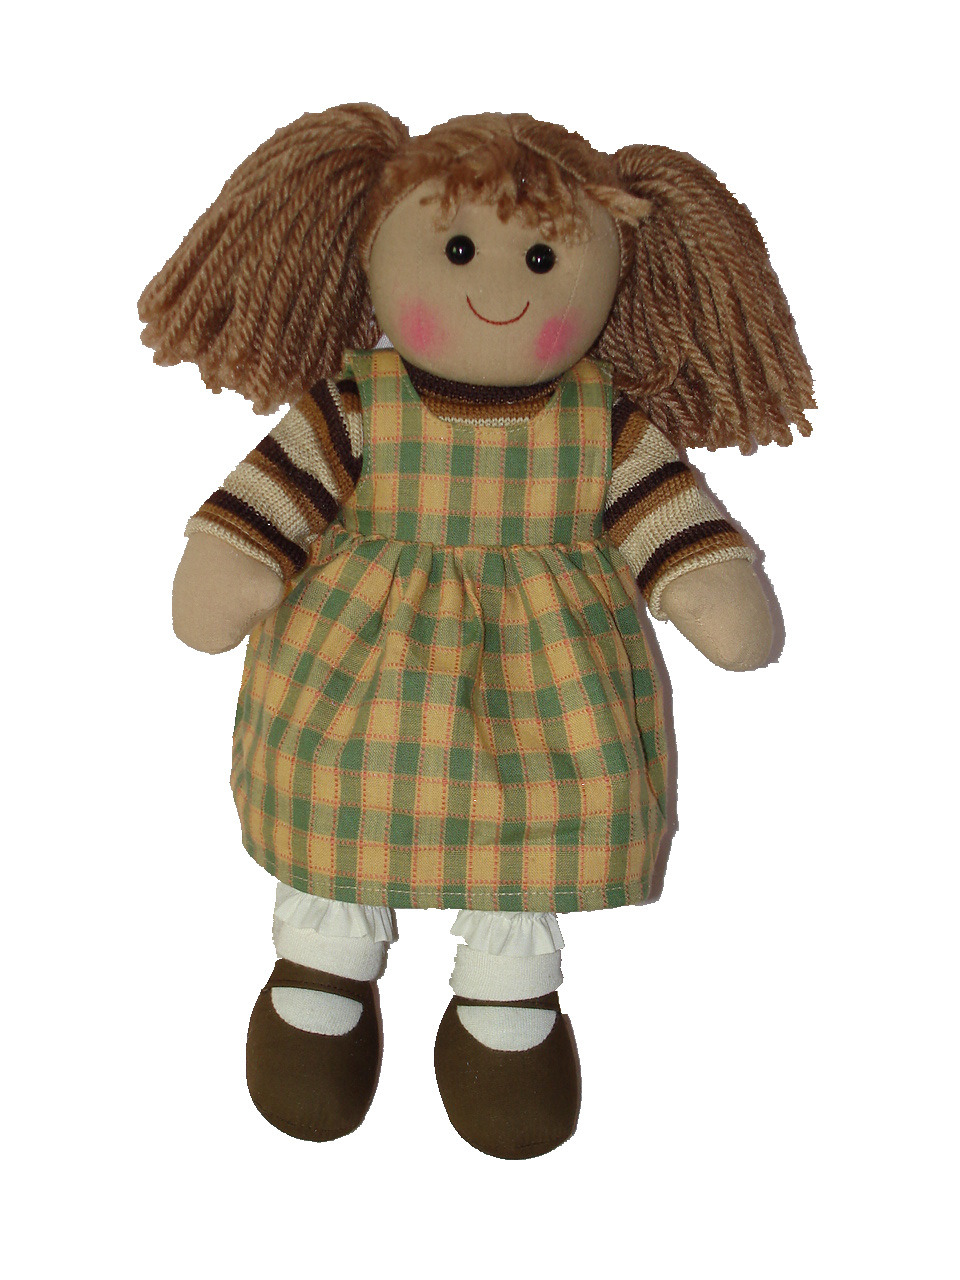 Cute Baby Doll Plush Rag Doll with Cloth